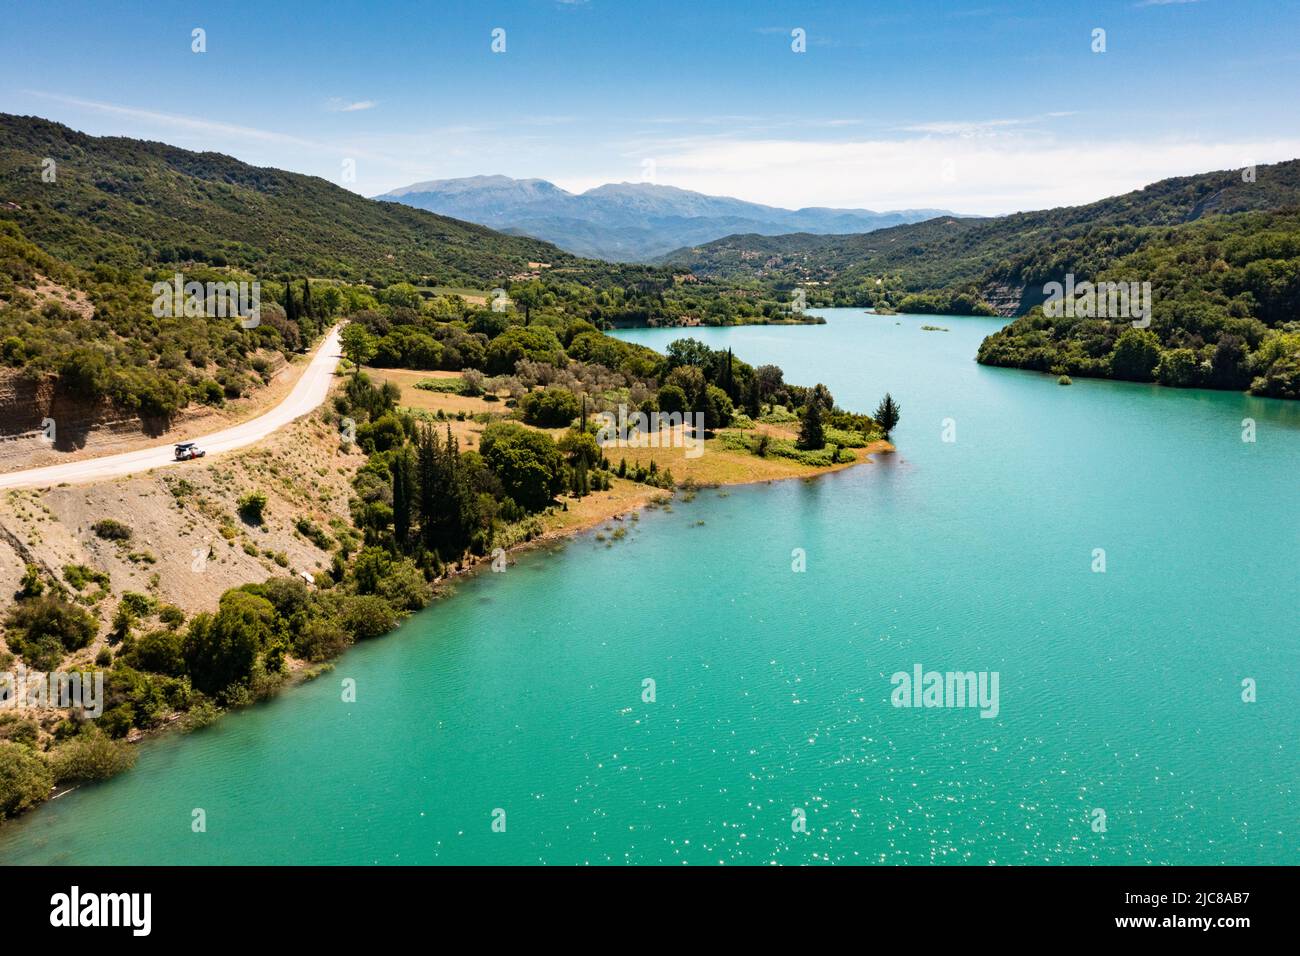 RoadTrip: Vista aerea su un lago blu con strada che si snoda lungo la riva e un parcheggio 4x4 vicino ad esso Foto Stock